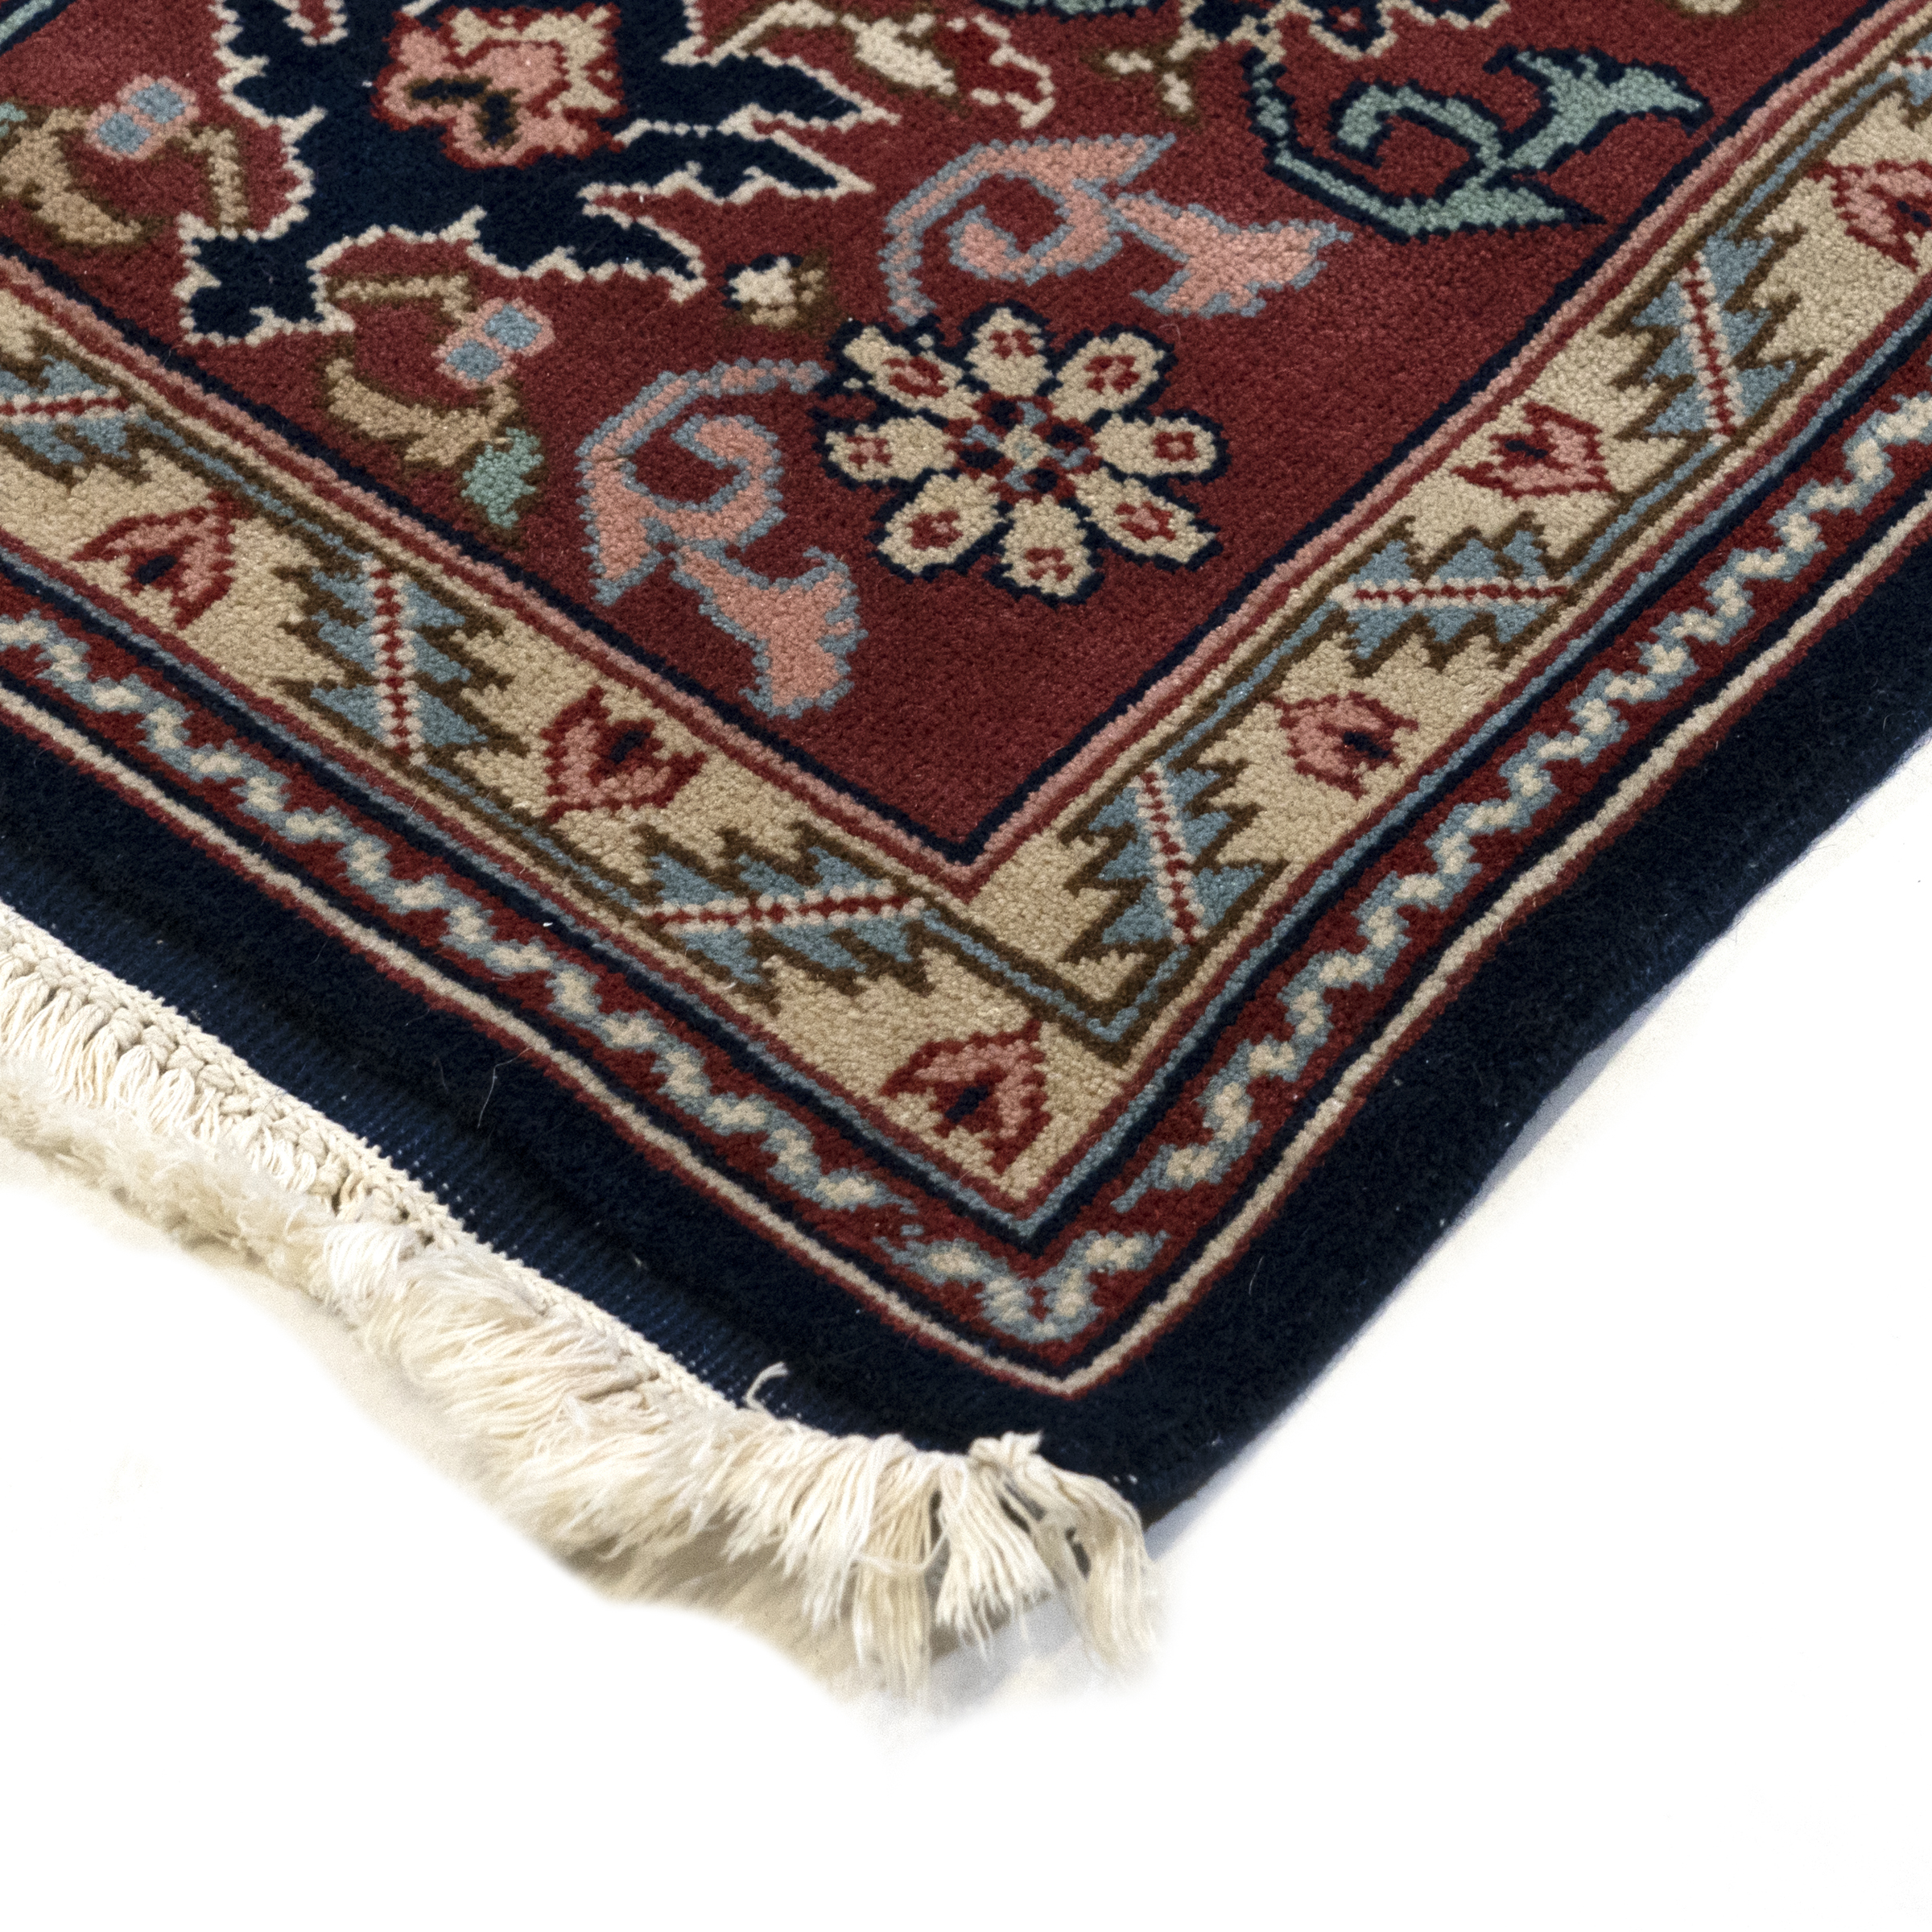 Indian Sarouk Carpet, c.1960